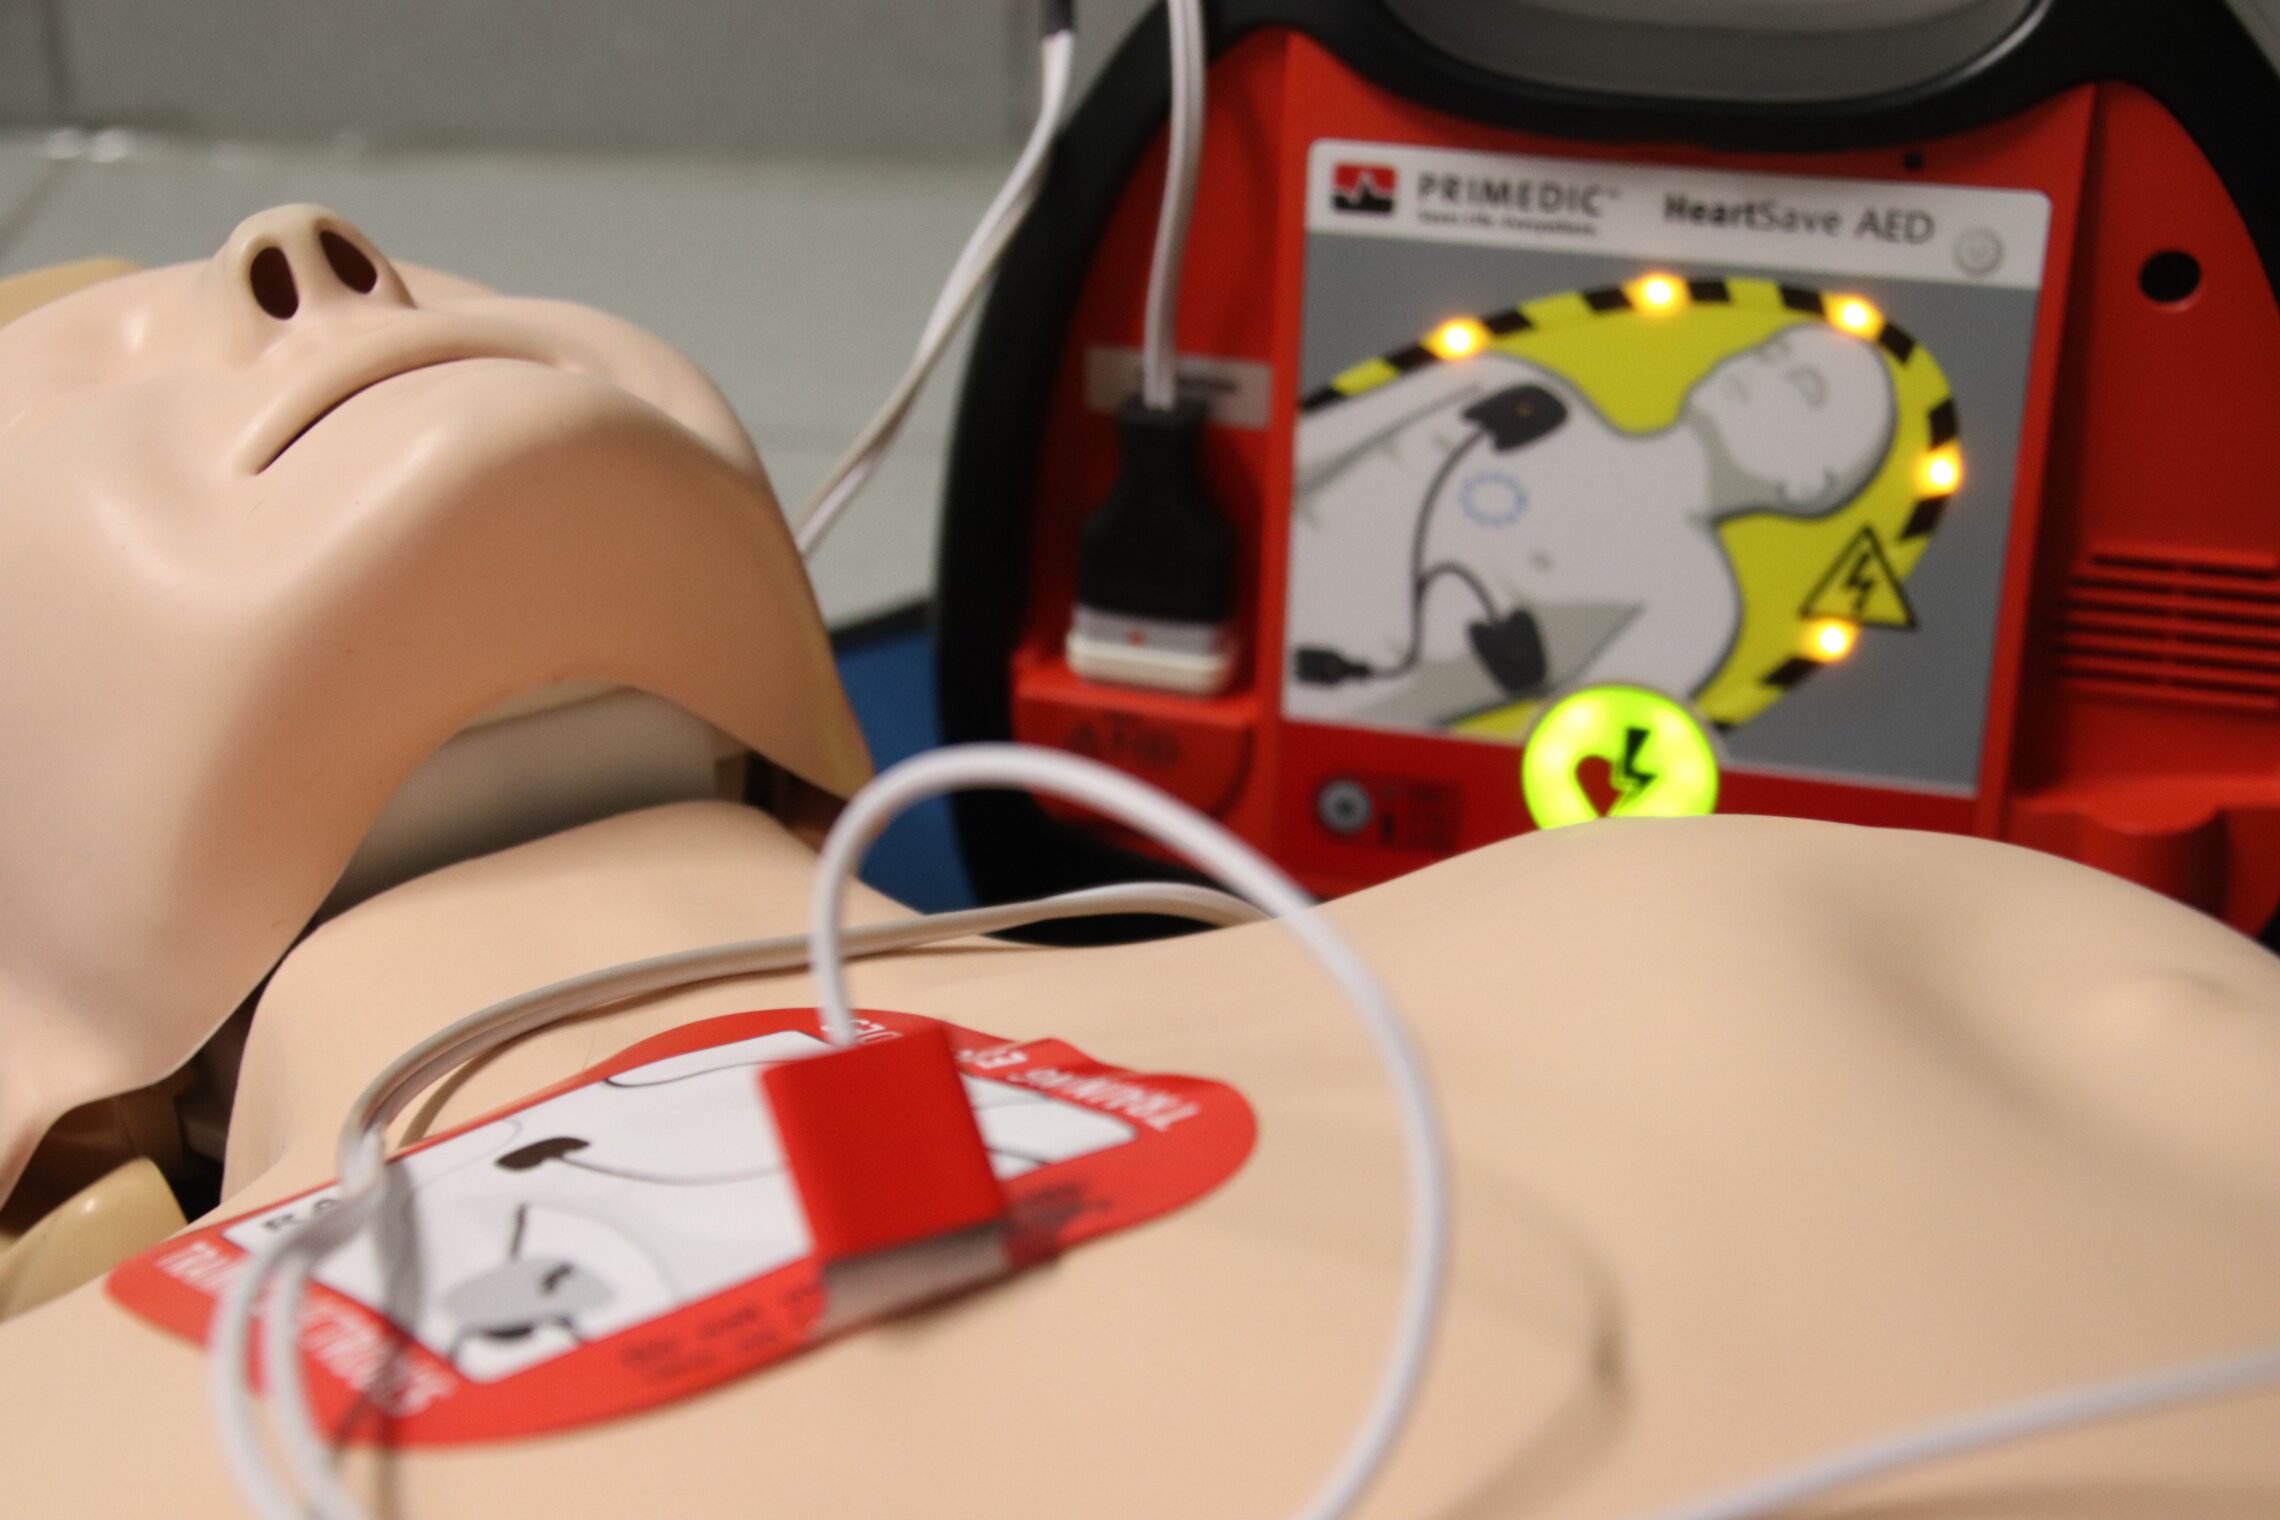 Erste Hilfe mit AED